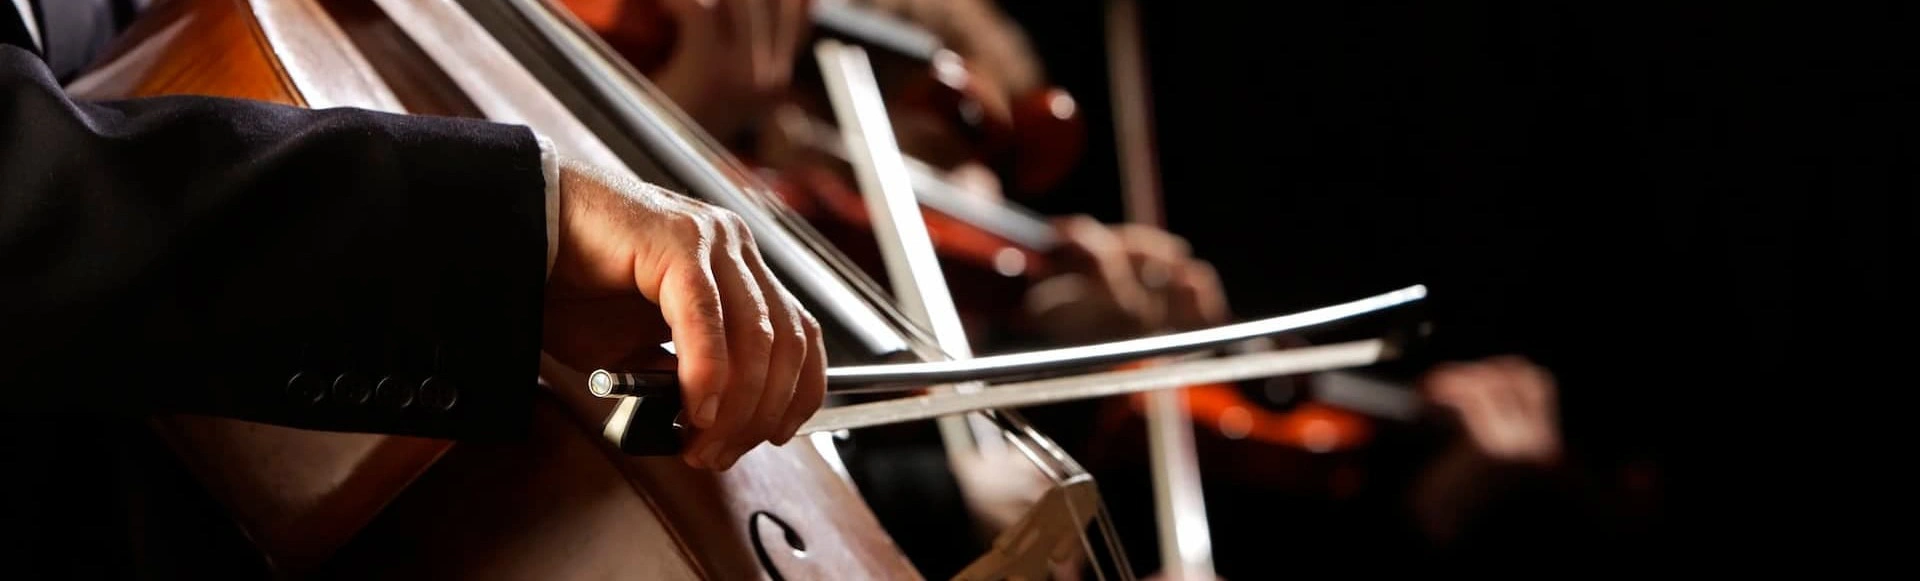 Музыку «Король и Шут» в исполнении оркестра можно будет послушать в Новосибирске
